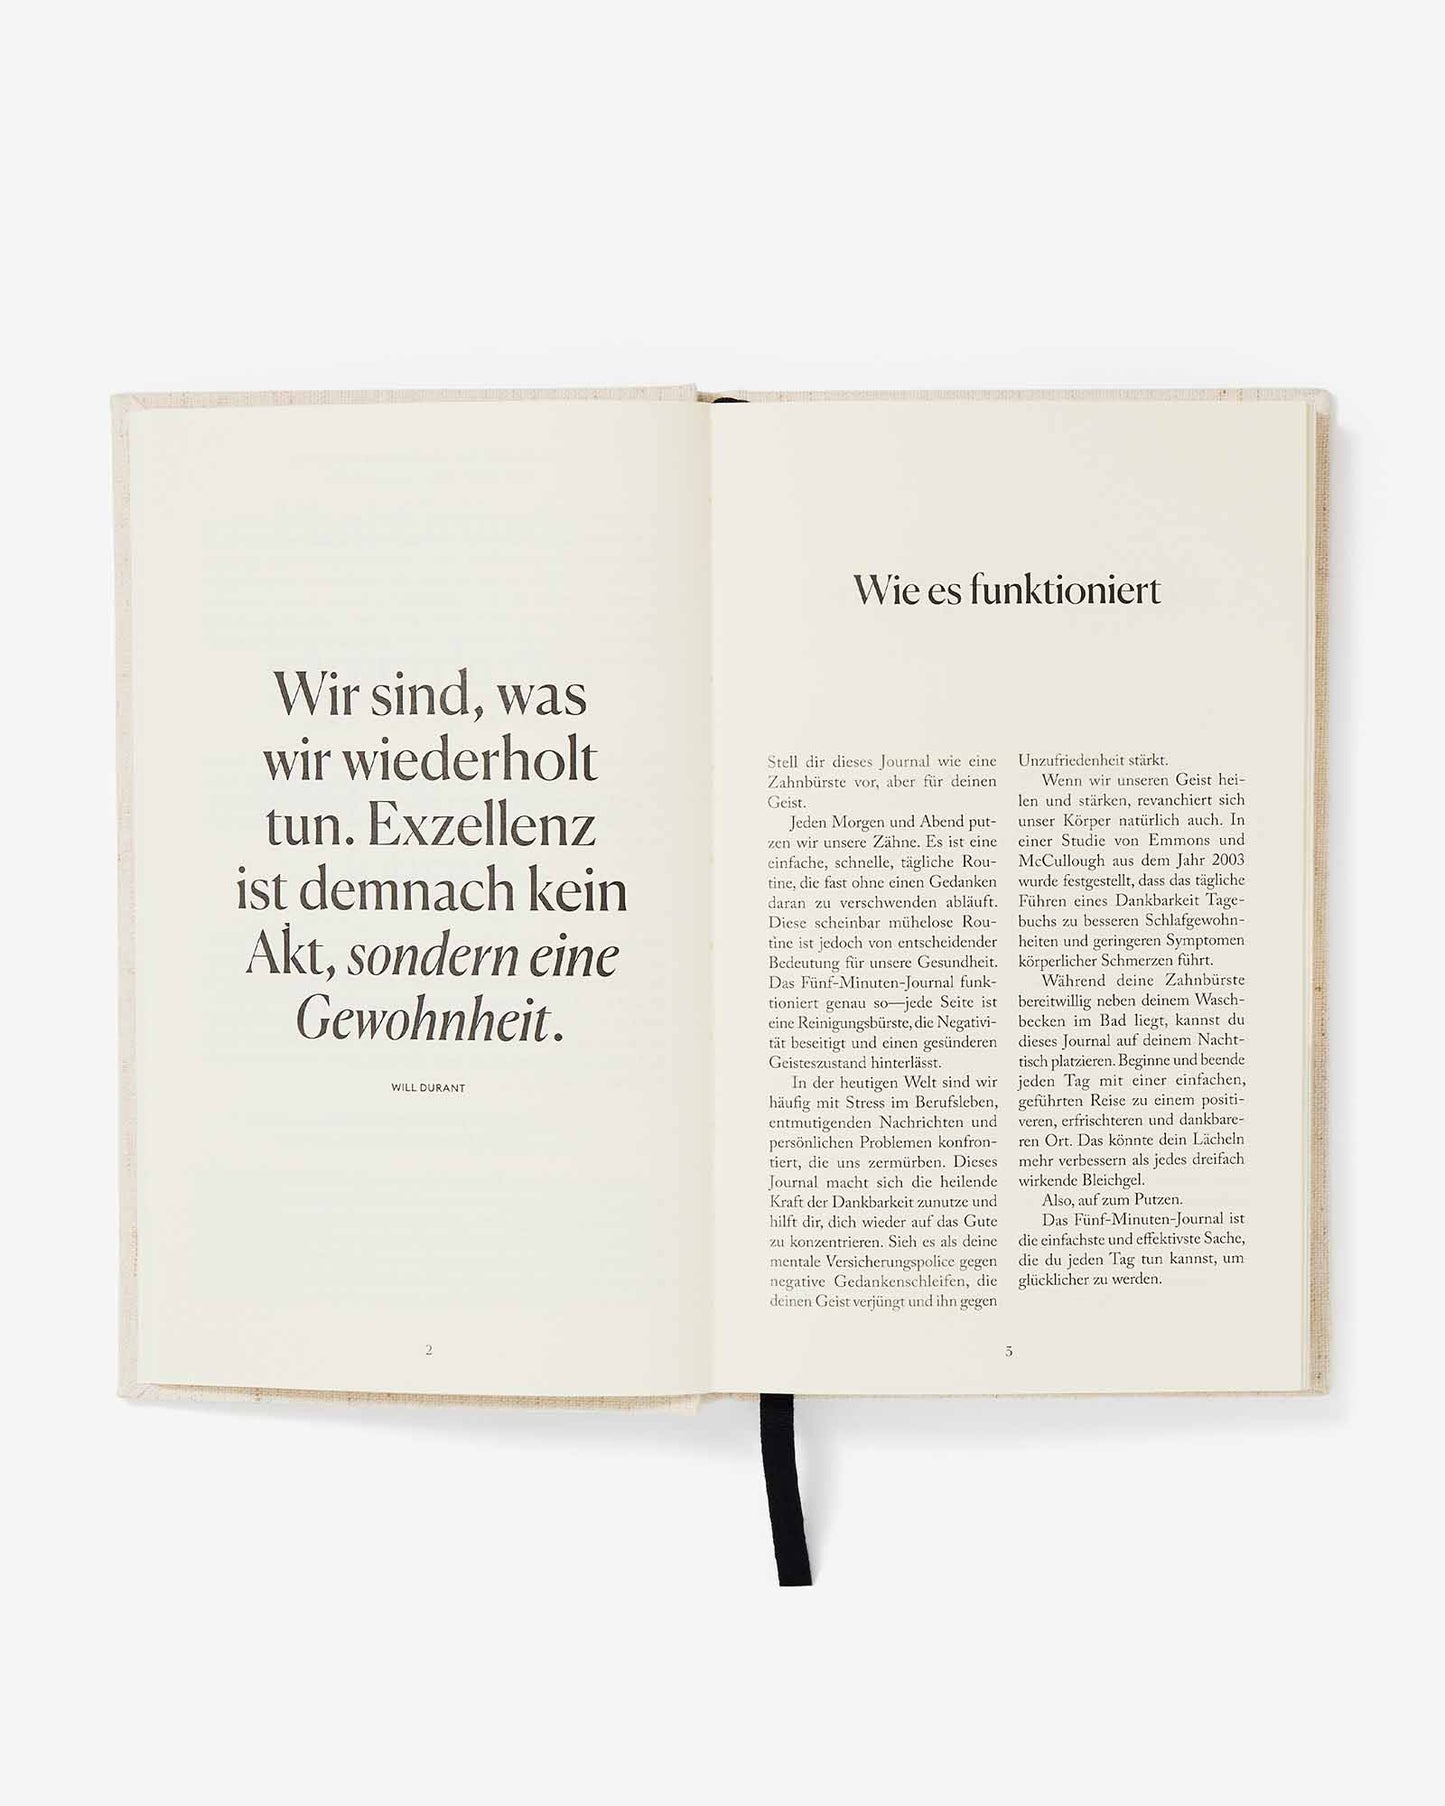 Das Fünf Minuten Journal (German Five Minute Journal) by Intelligent Change